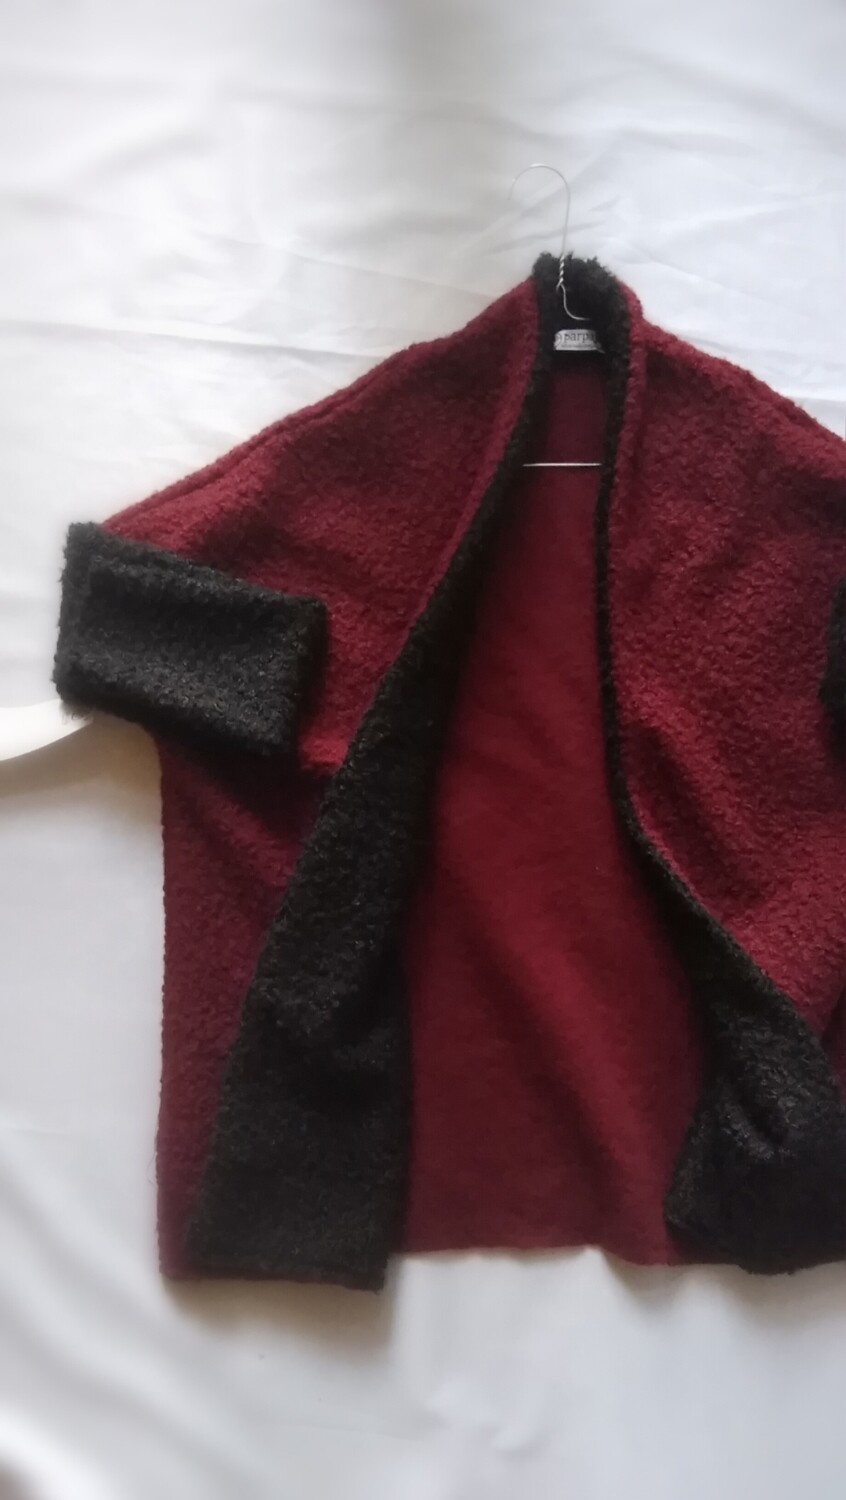 ACERO cardigan / cappottino leggero in tessuto ricciolino bicolor bordeaux/nero 